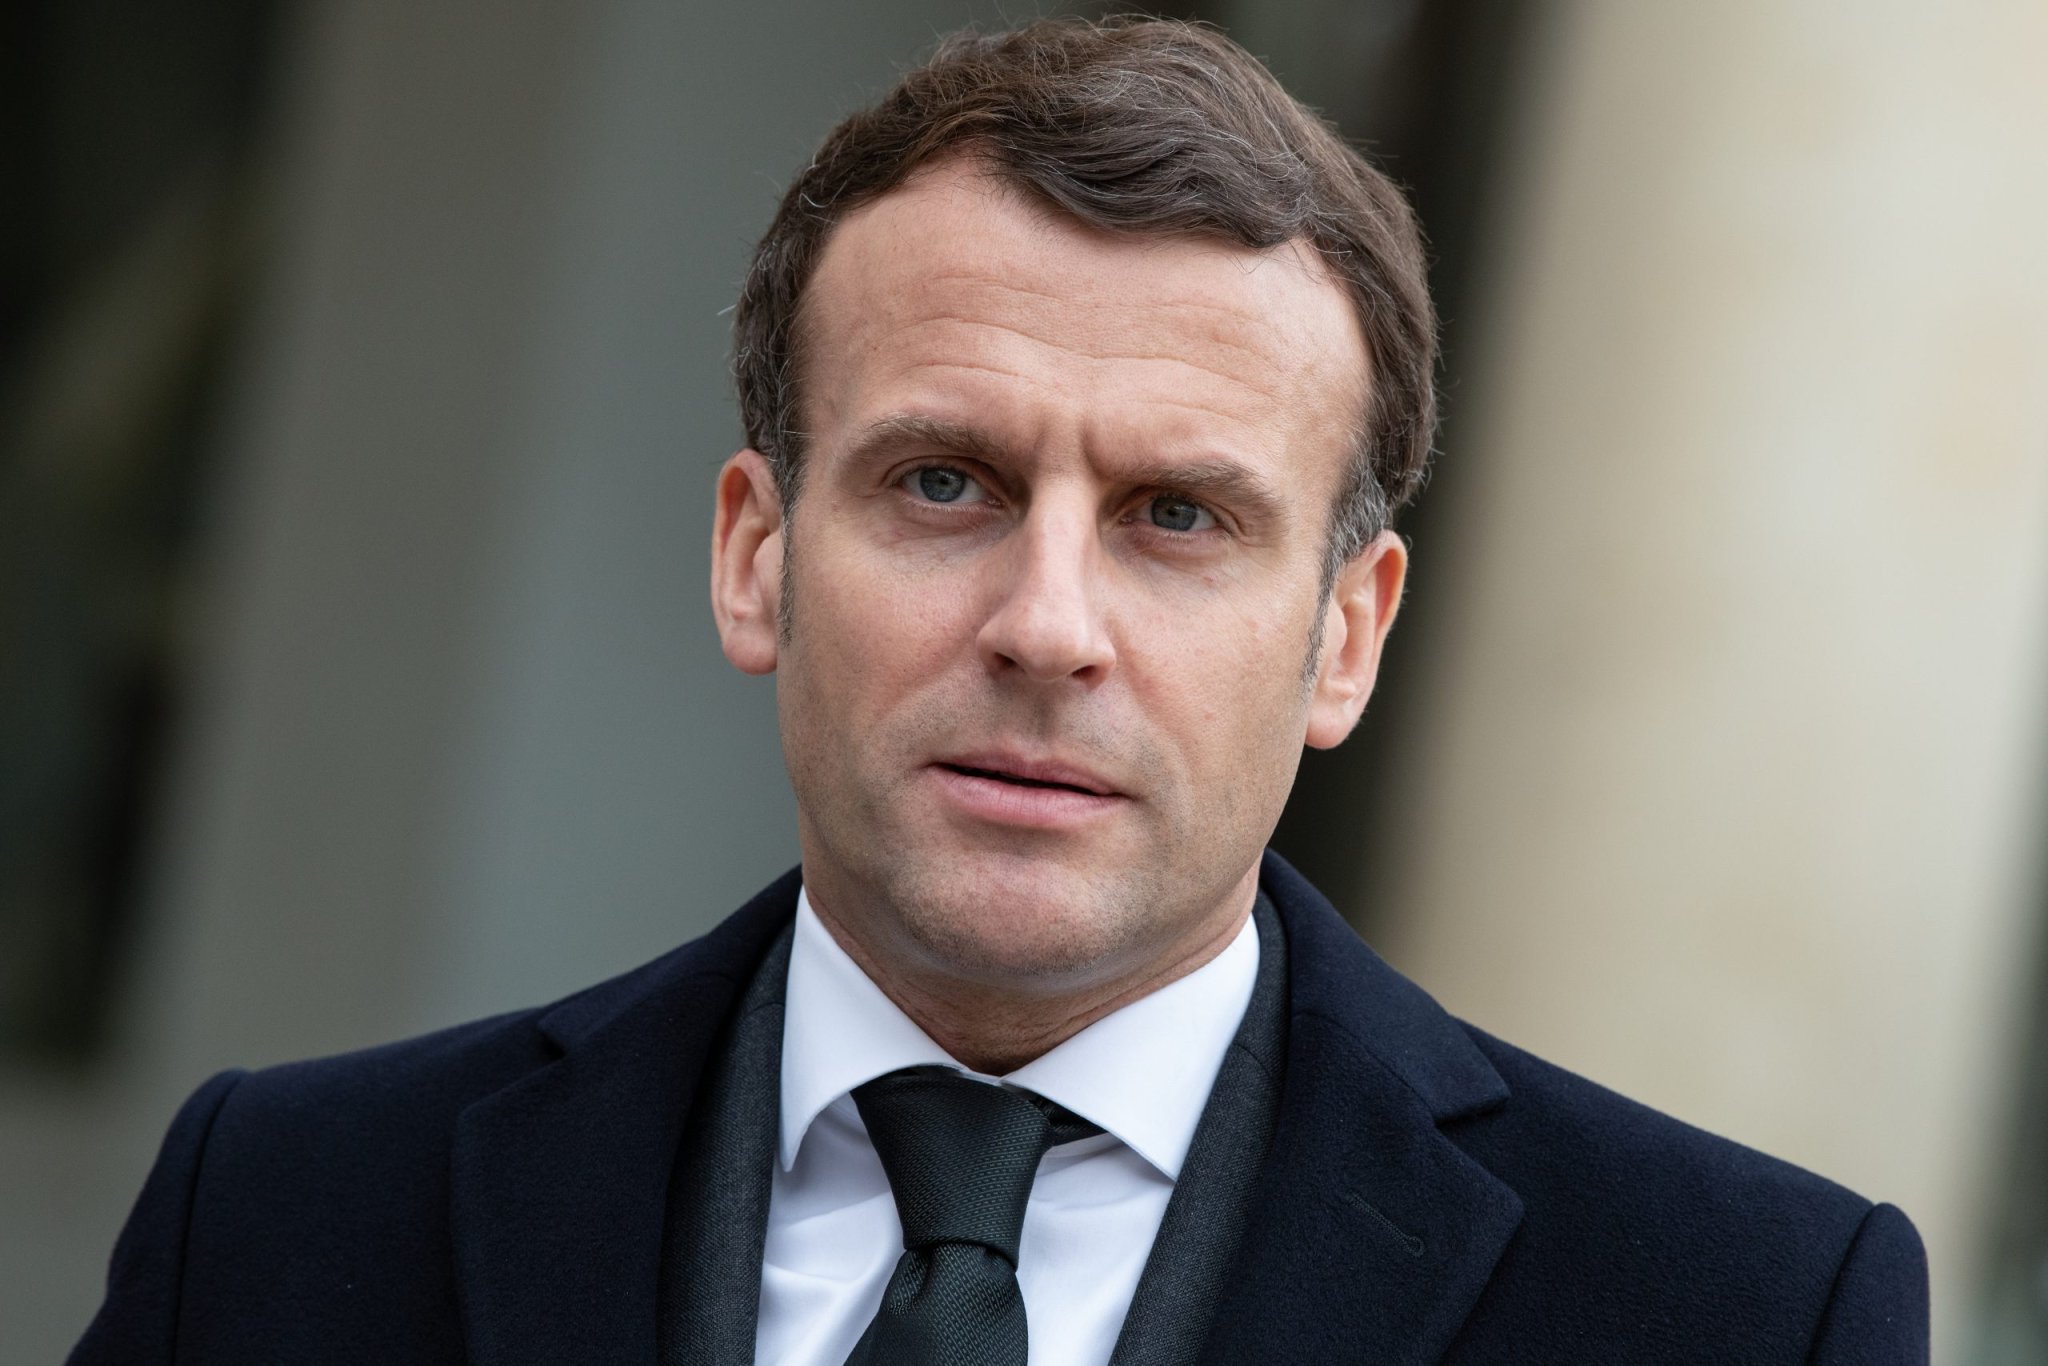 A quoi pourrait ressembler le metaverse européen souhaité par Emmanuel Macron ? - WE DEMAIN